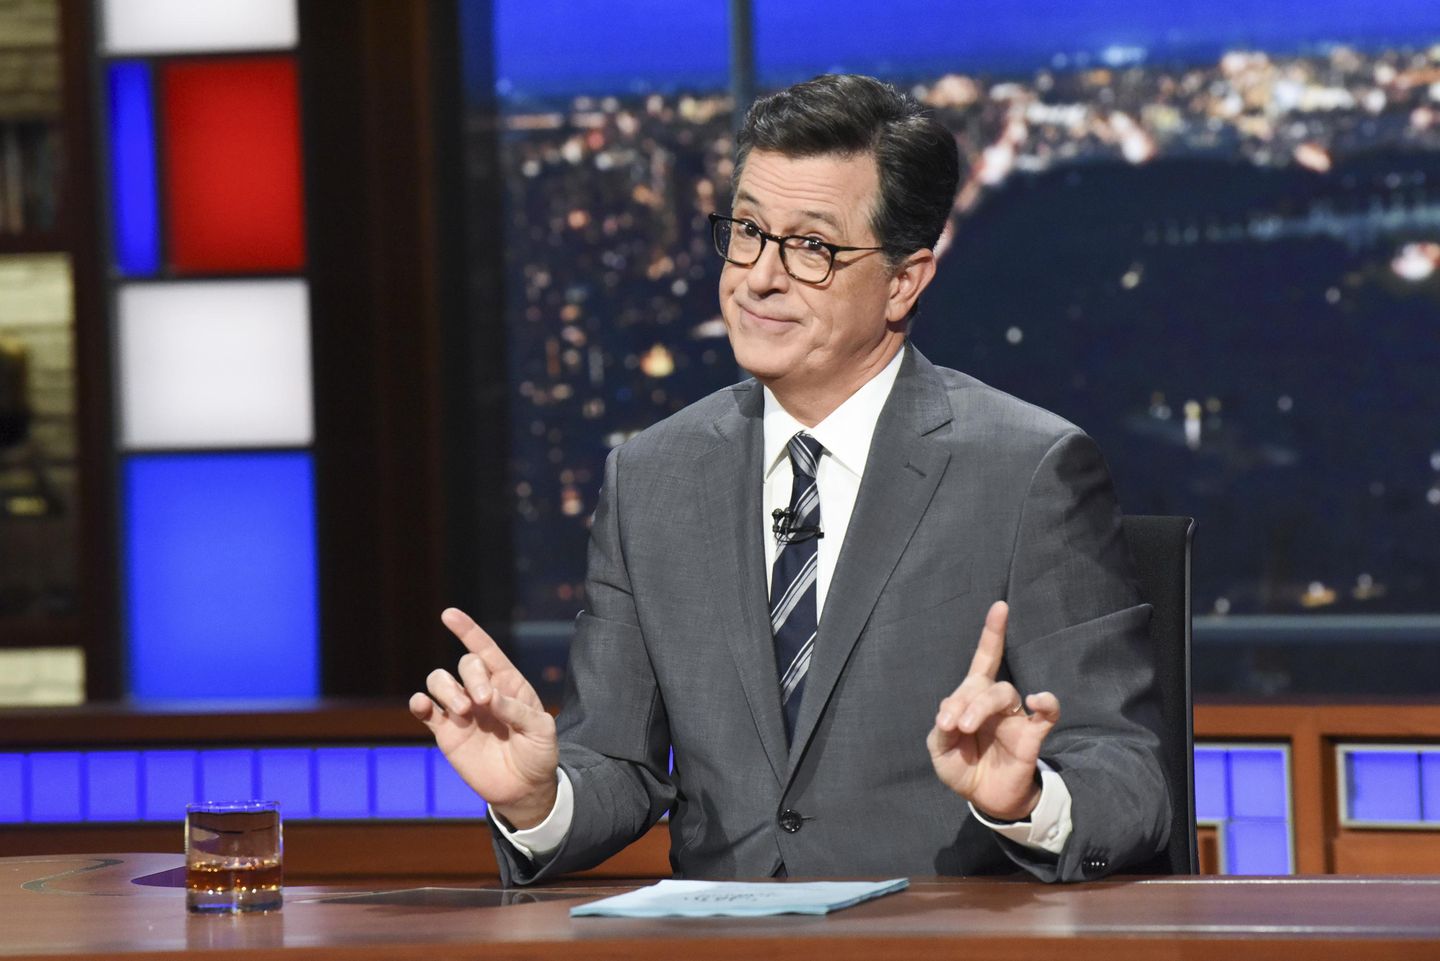 Los republicanos nombran al empleado demócrata que permitió que el equipo de televisión de Stephen Colbert ingresara al complejo del Capitolio